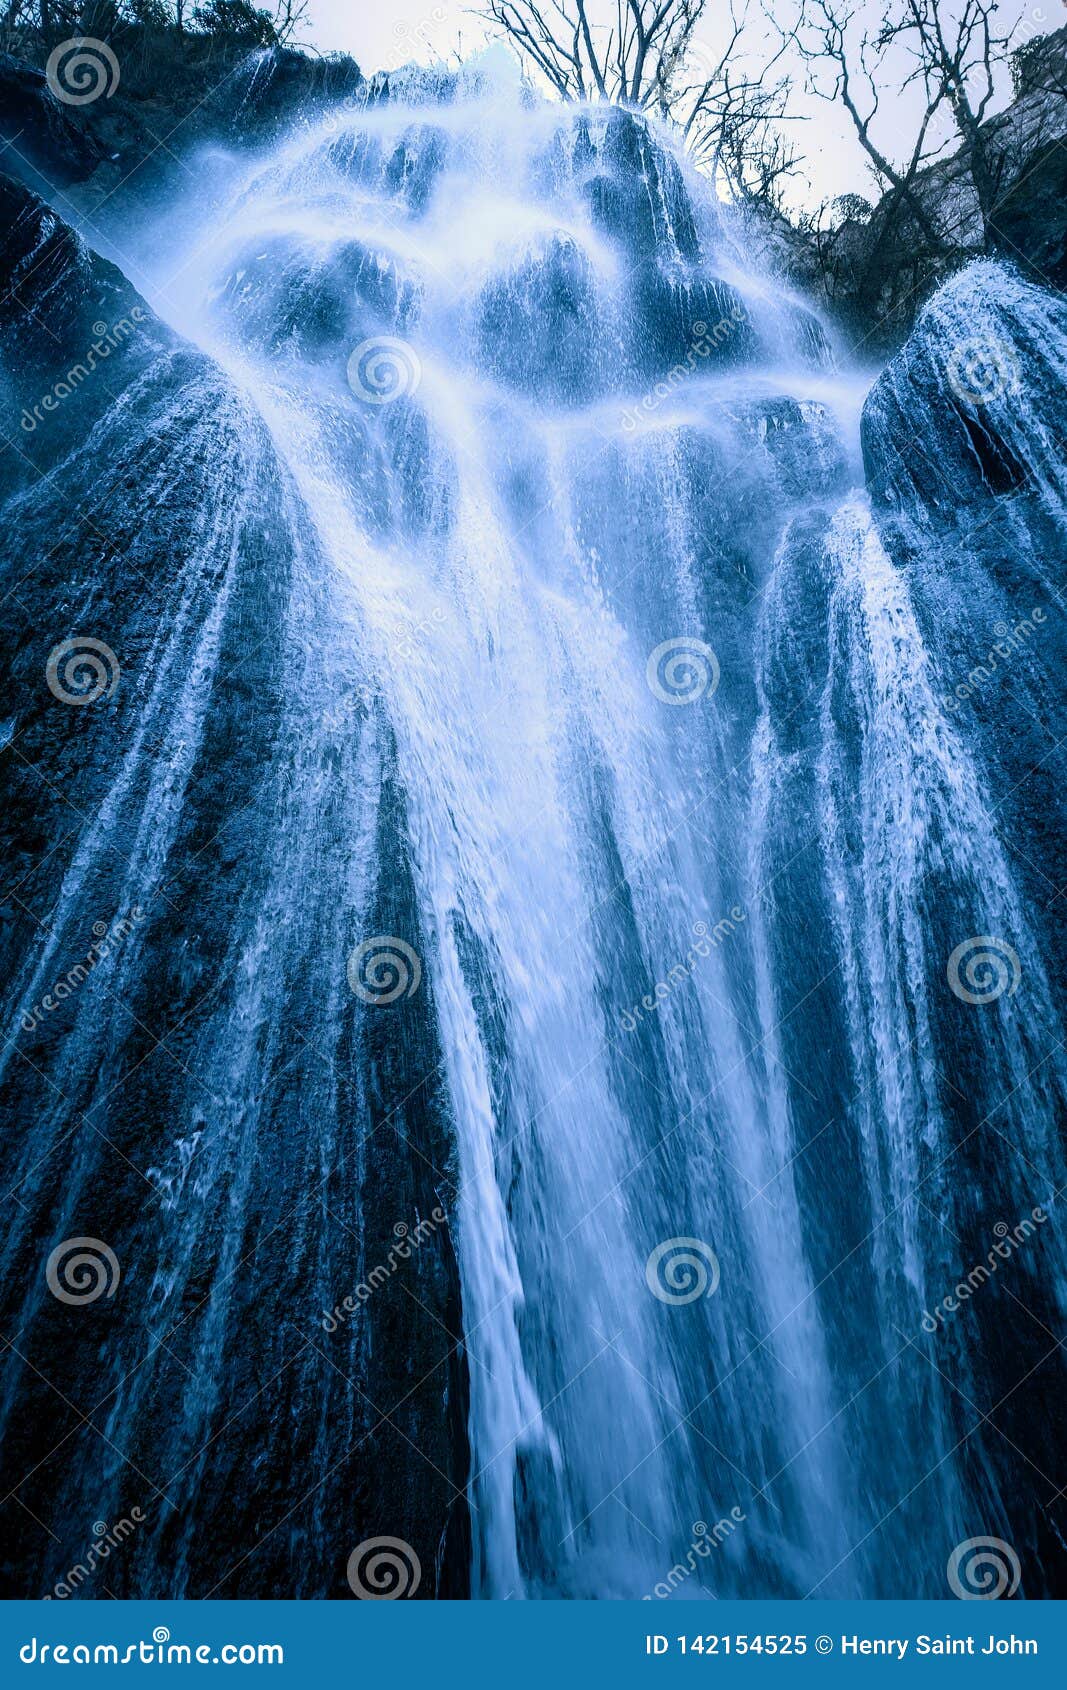 big waterfall with angel hair